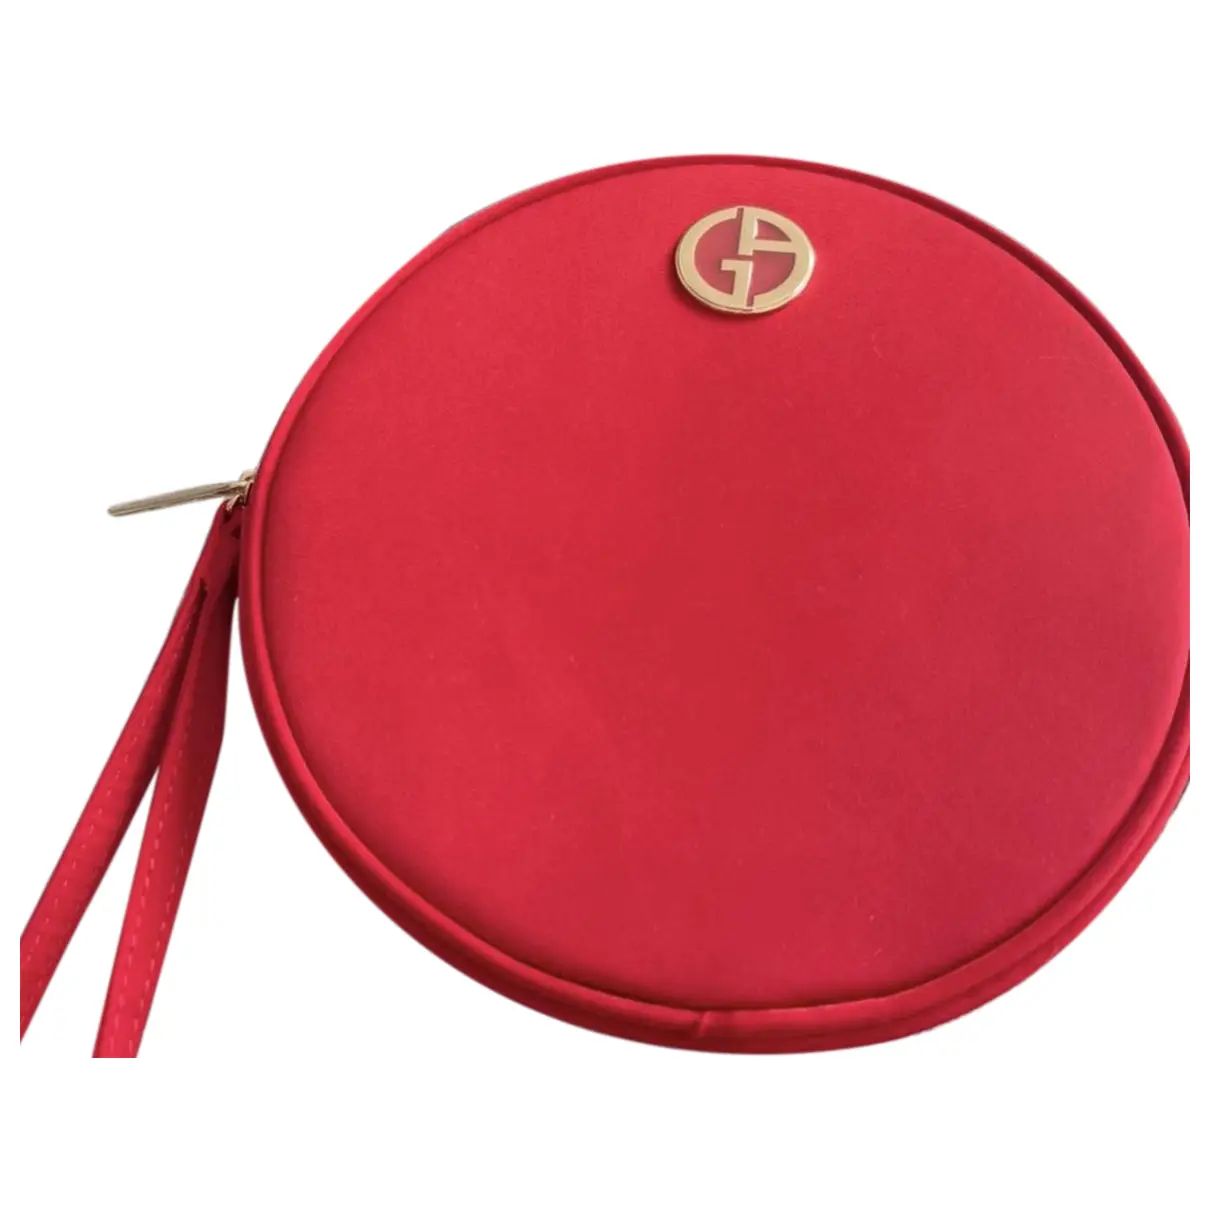 Leather clutch bag Giorgio Armani